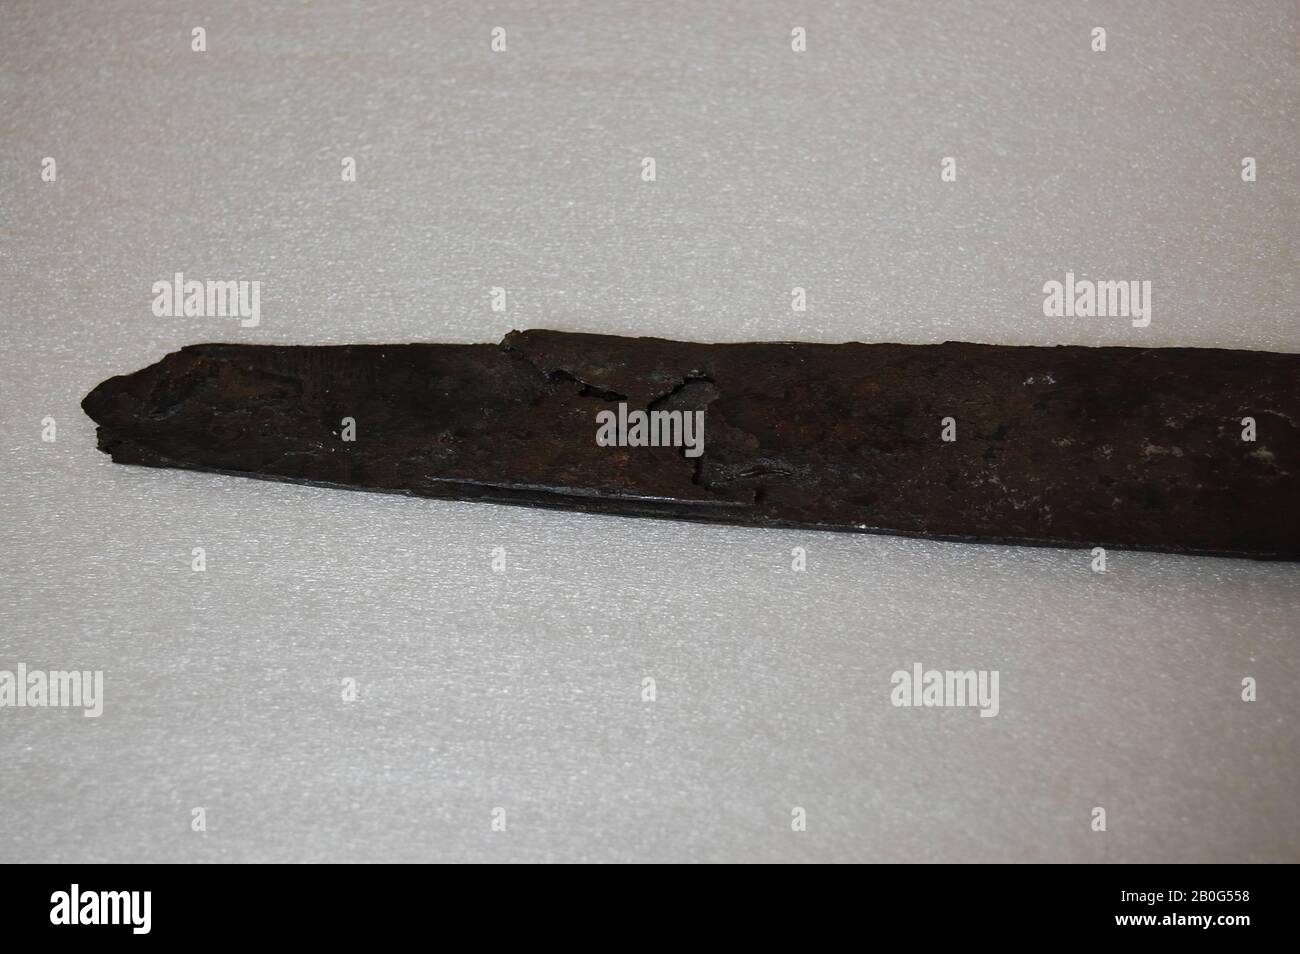 sword, metal, iron, 87.7 x 4.6 x 2.0 cm, prehistory, Belgium Stock Photo